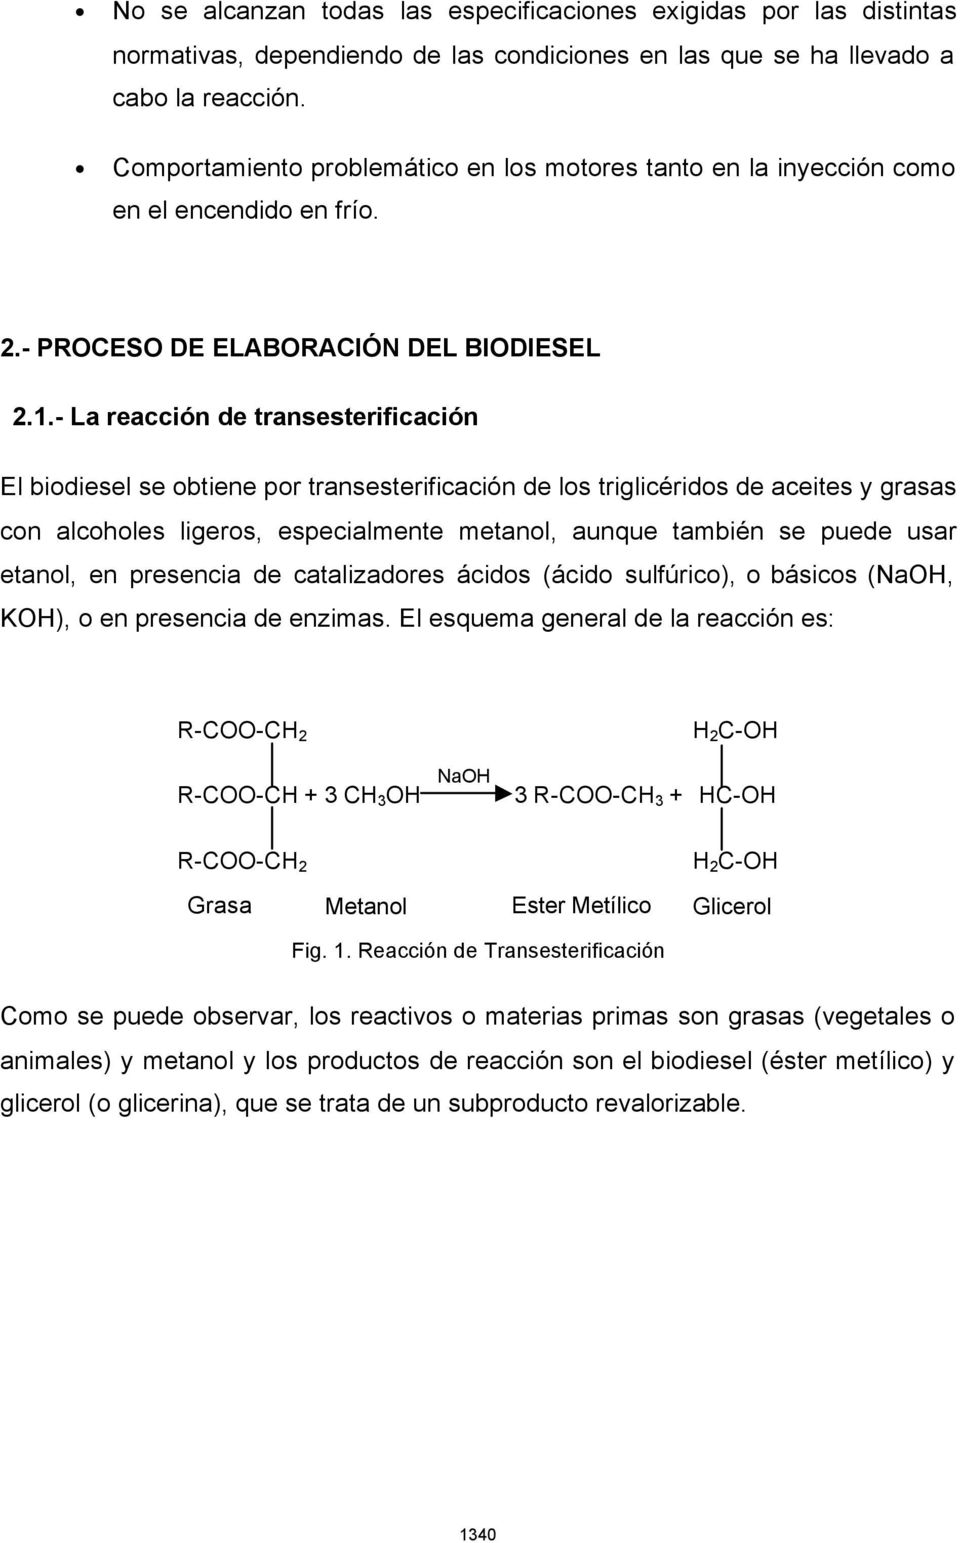 - La reacción de transesterificación El biodiesel se obtiene por transesterificación de los triglicéridos de aceites y grasas con alcoholes ligeros, especialmente metanol, aunque también se puede